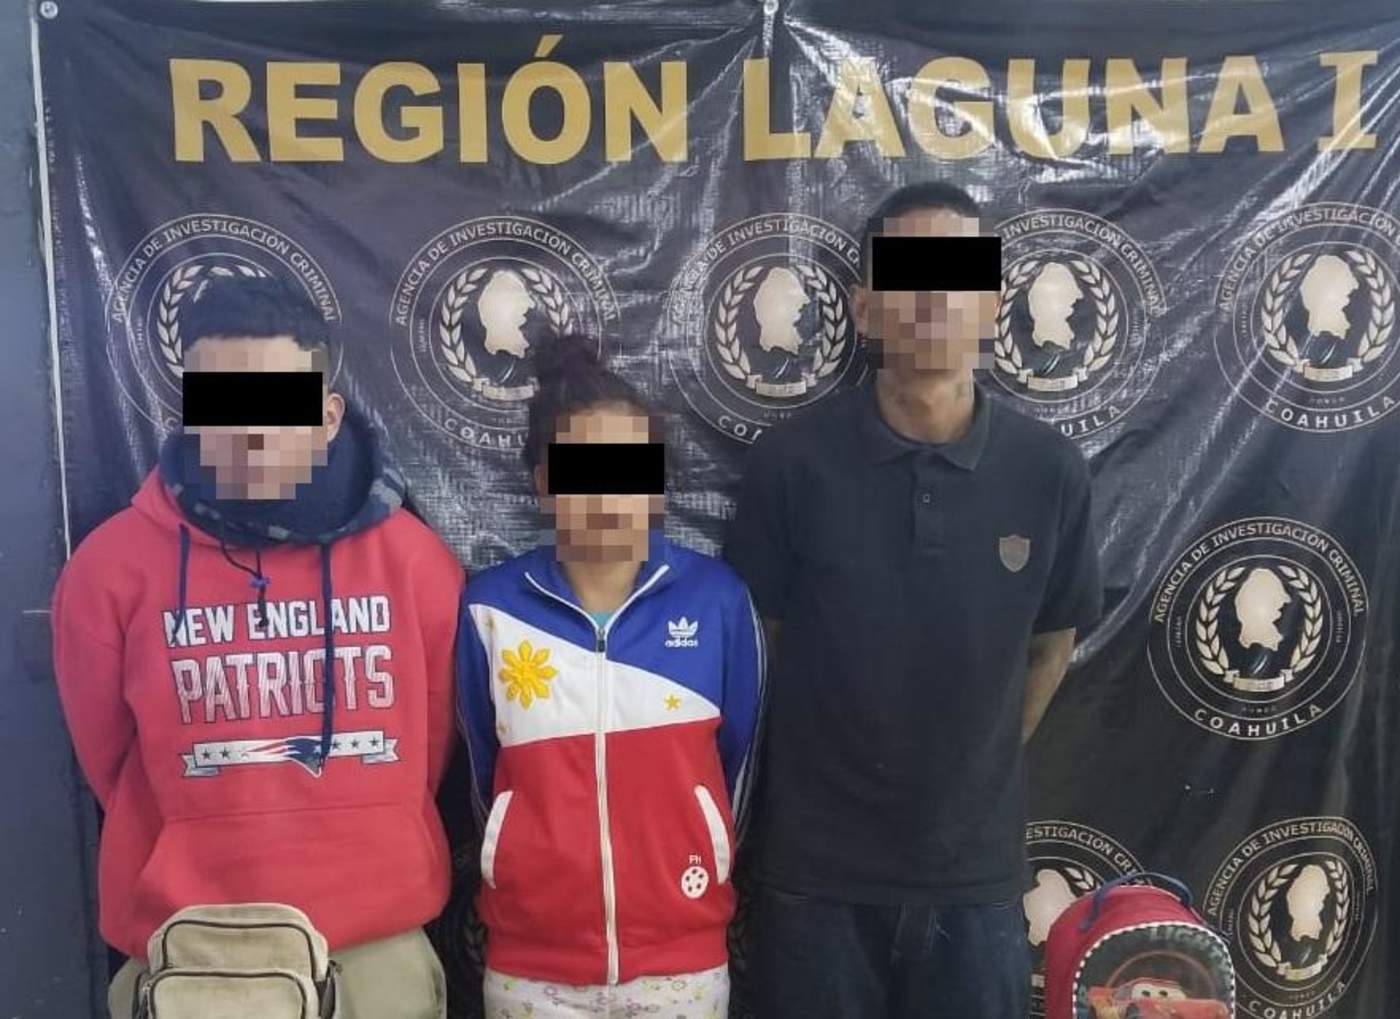 Las detenciones por narcomenudeo en la Región Laguna 2, sumaron 13 detenciones y el decomiso de alrededor de 47 dosis de la droga conocida como cristal y 110 de marihuana. (ESPECIAL)